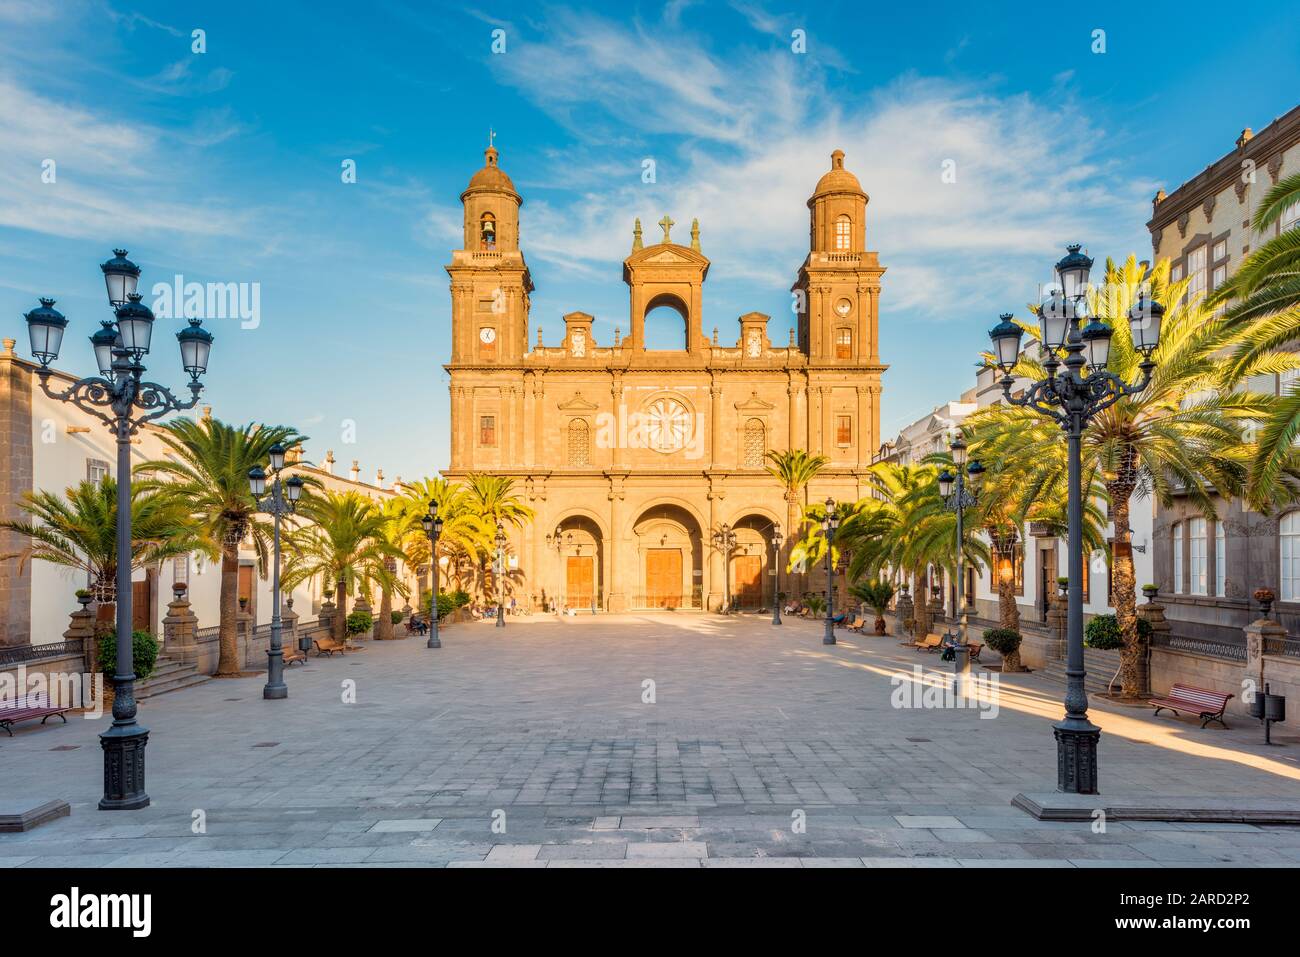 Cathédrale de Santa Ana à Las Palmas de Gran Canaria, capitale de Gran Canaria, îles Canaries, Espagne. La construction a commencé en 1500 et a duré 4 ce Banque D'Images